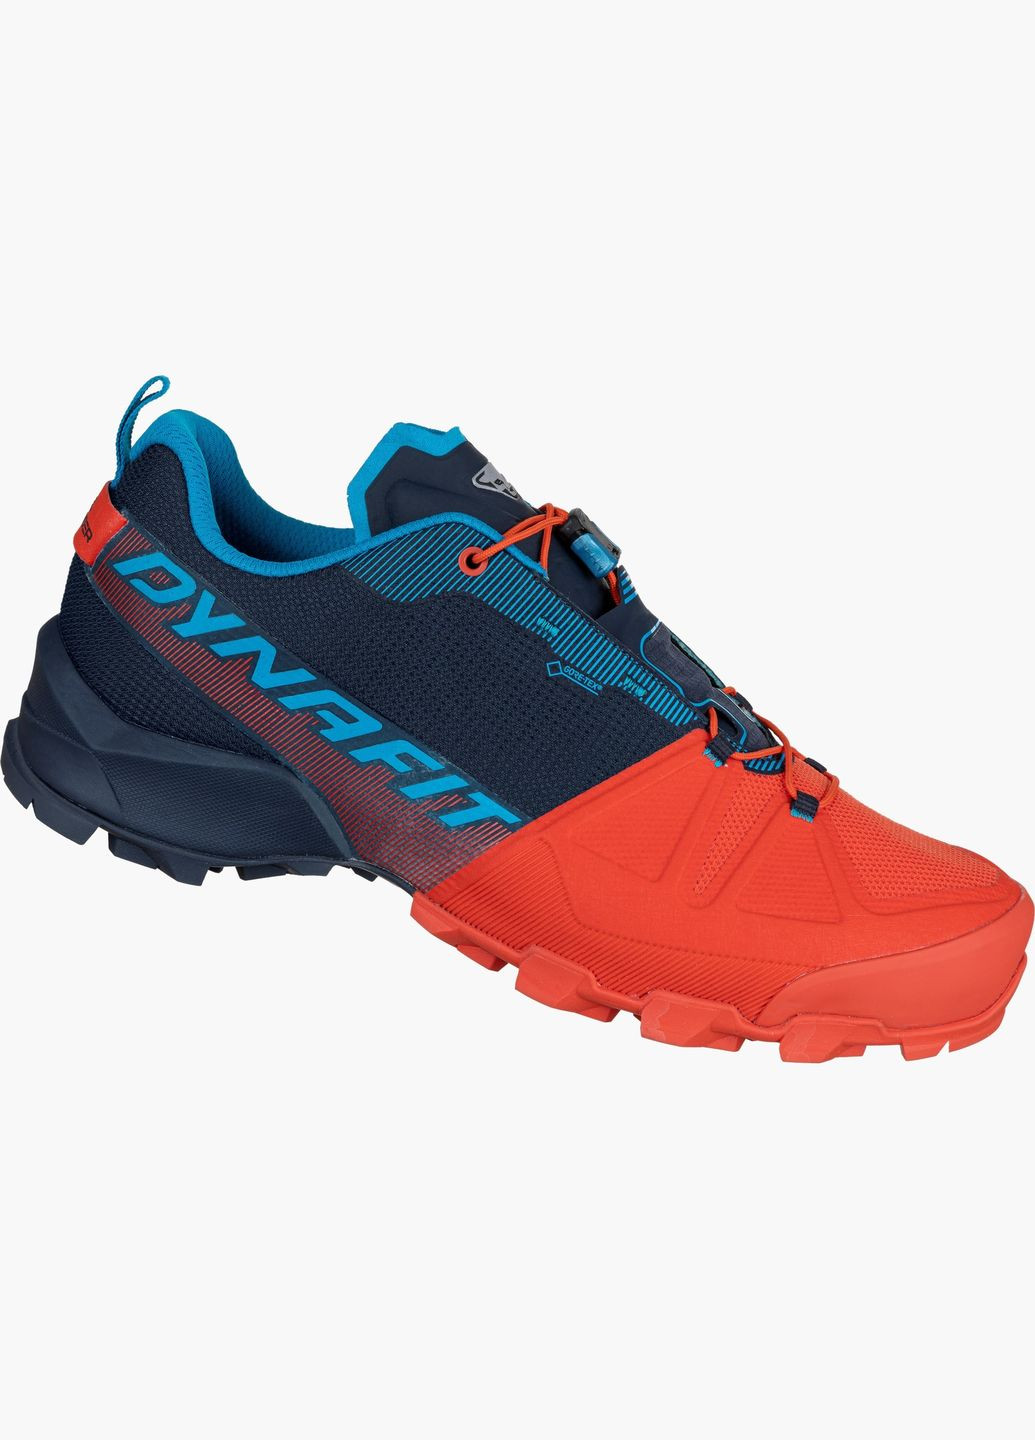 Цветные всесезонные кроссовки мужские transalper gtx синий-оранжевый Dynafit